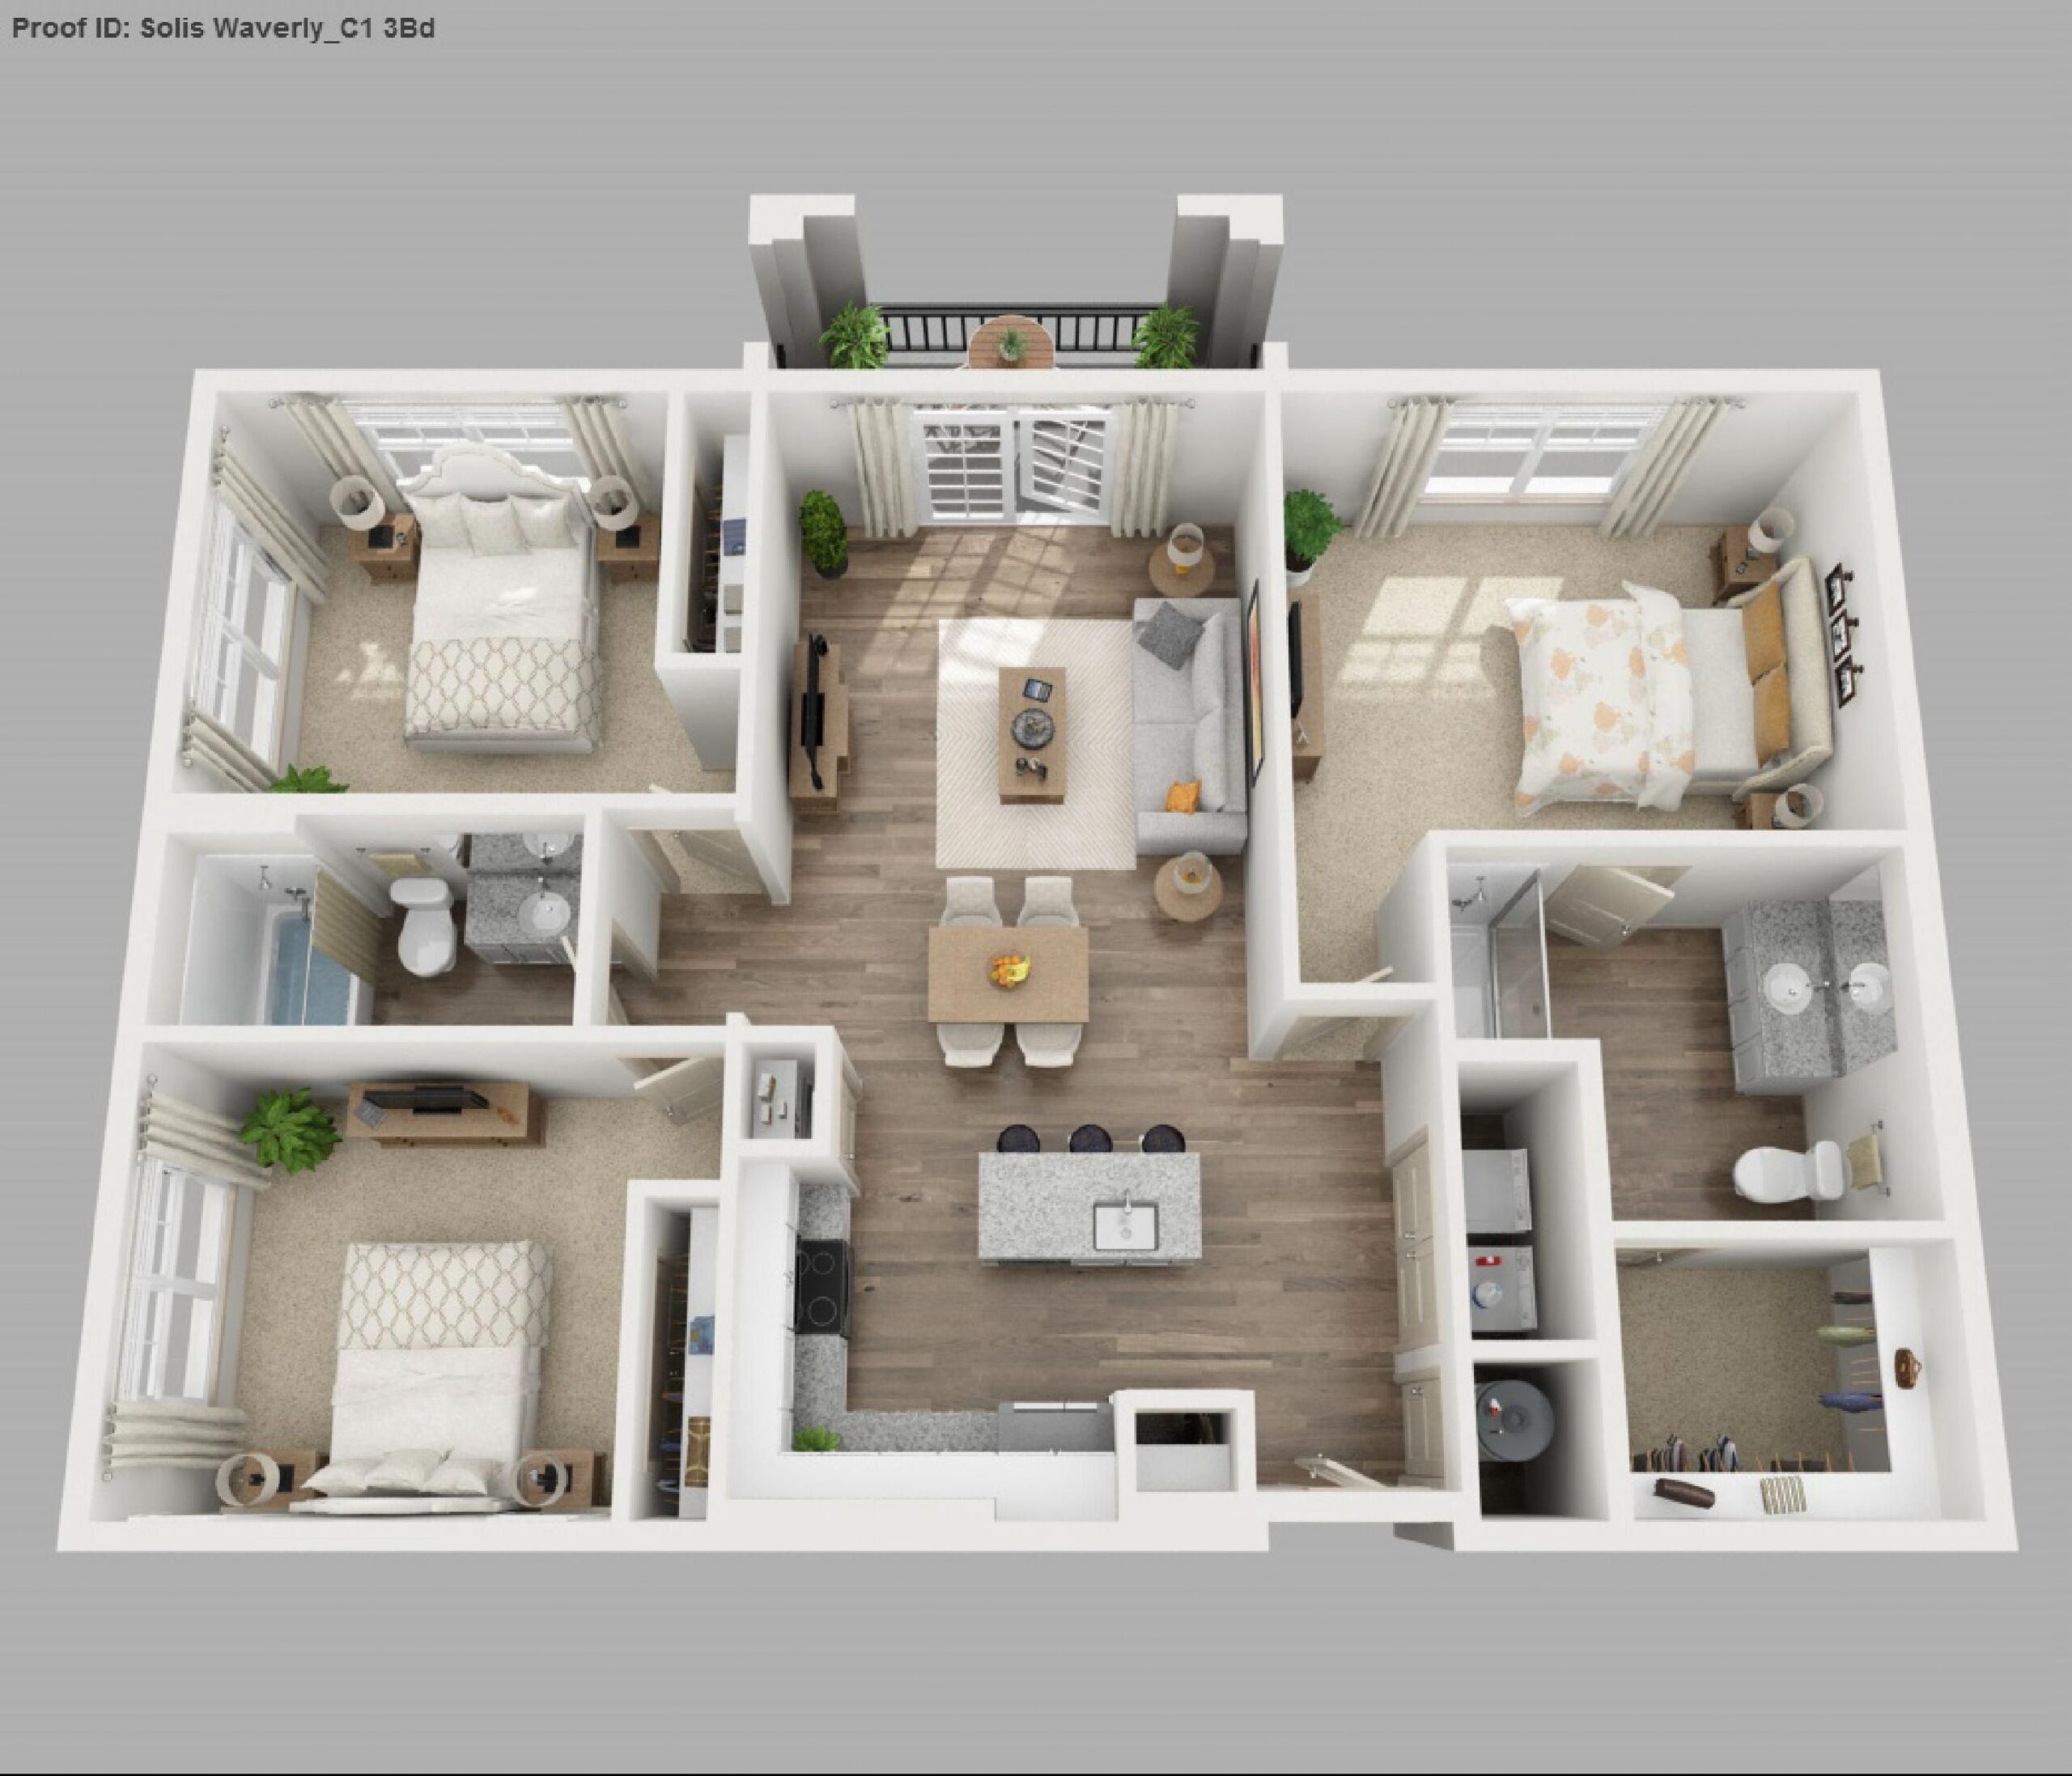 Exquisite bedroom design #interiorplanningbedroomtips | apartment floor plans regarding 3 bedroom house plans